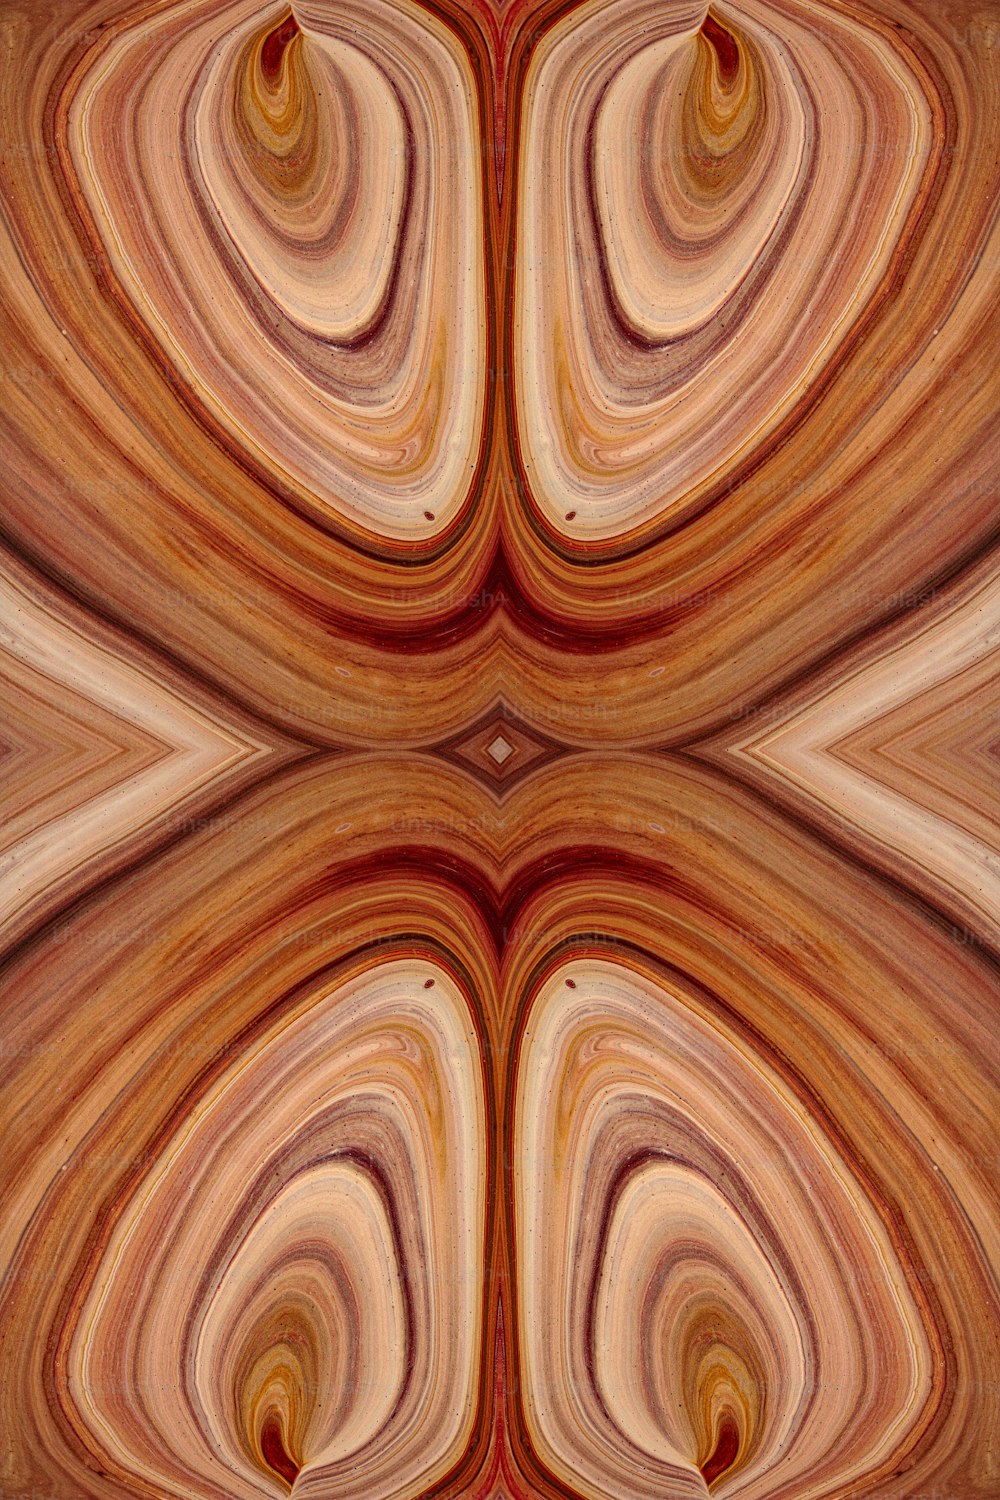 Une image abstraite d’un tourbillon brun et rouge